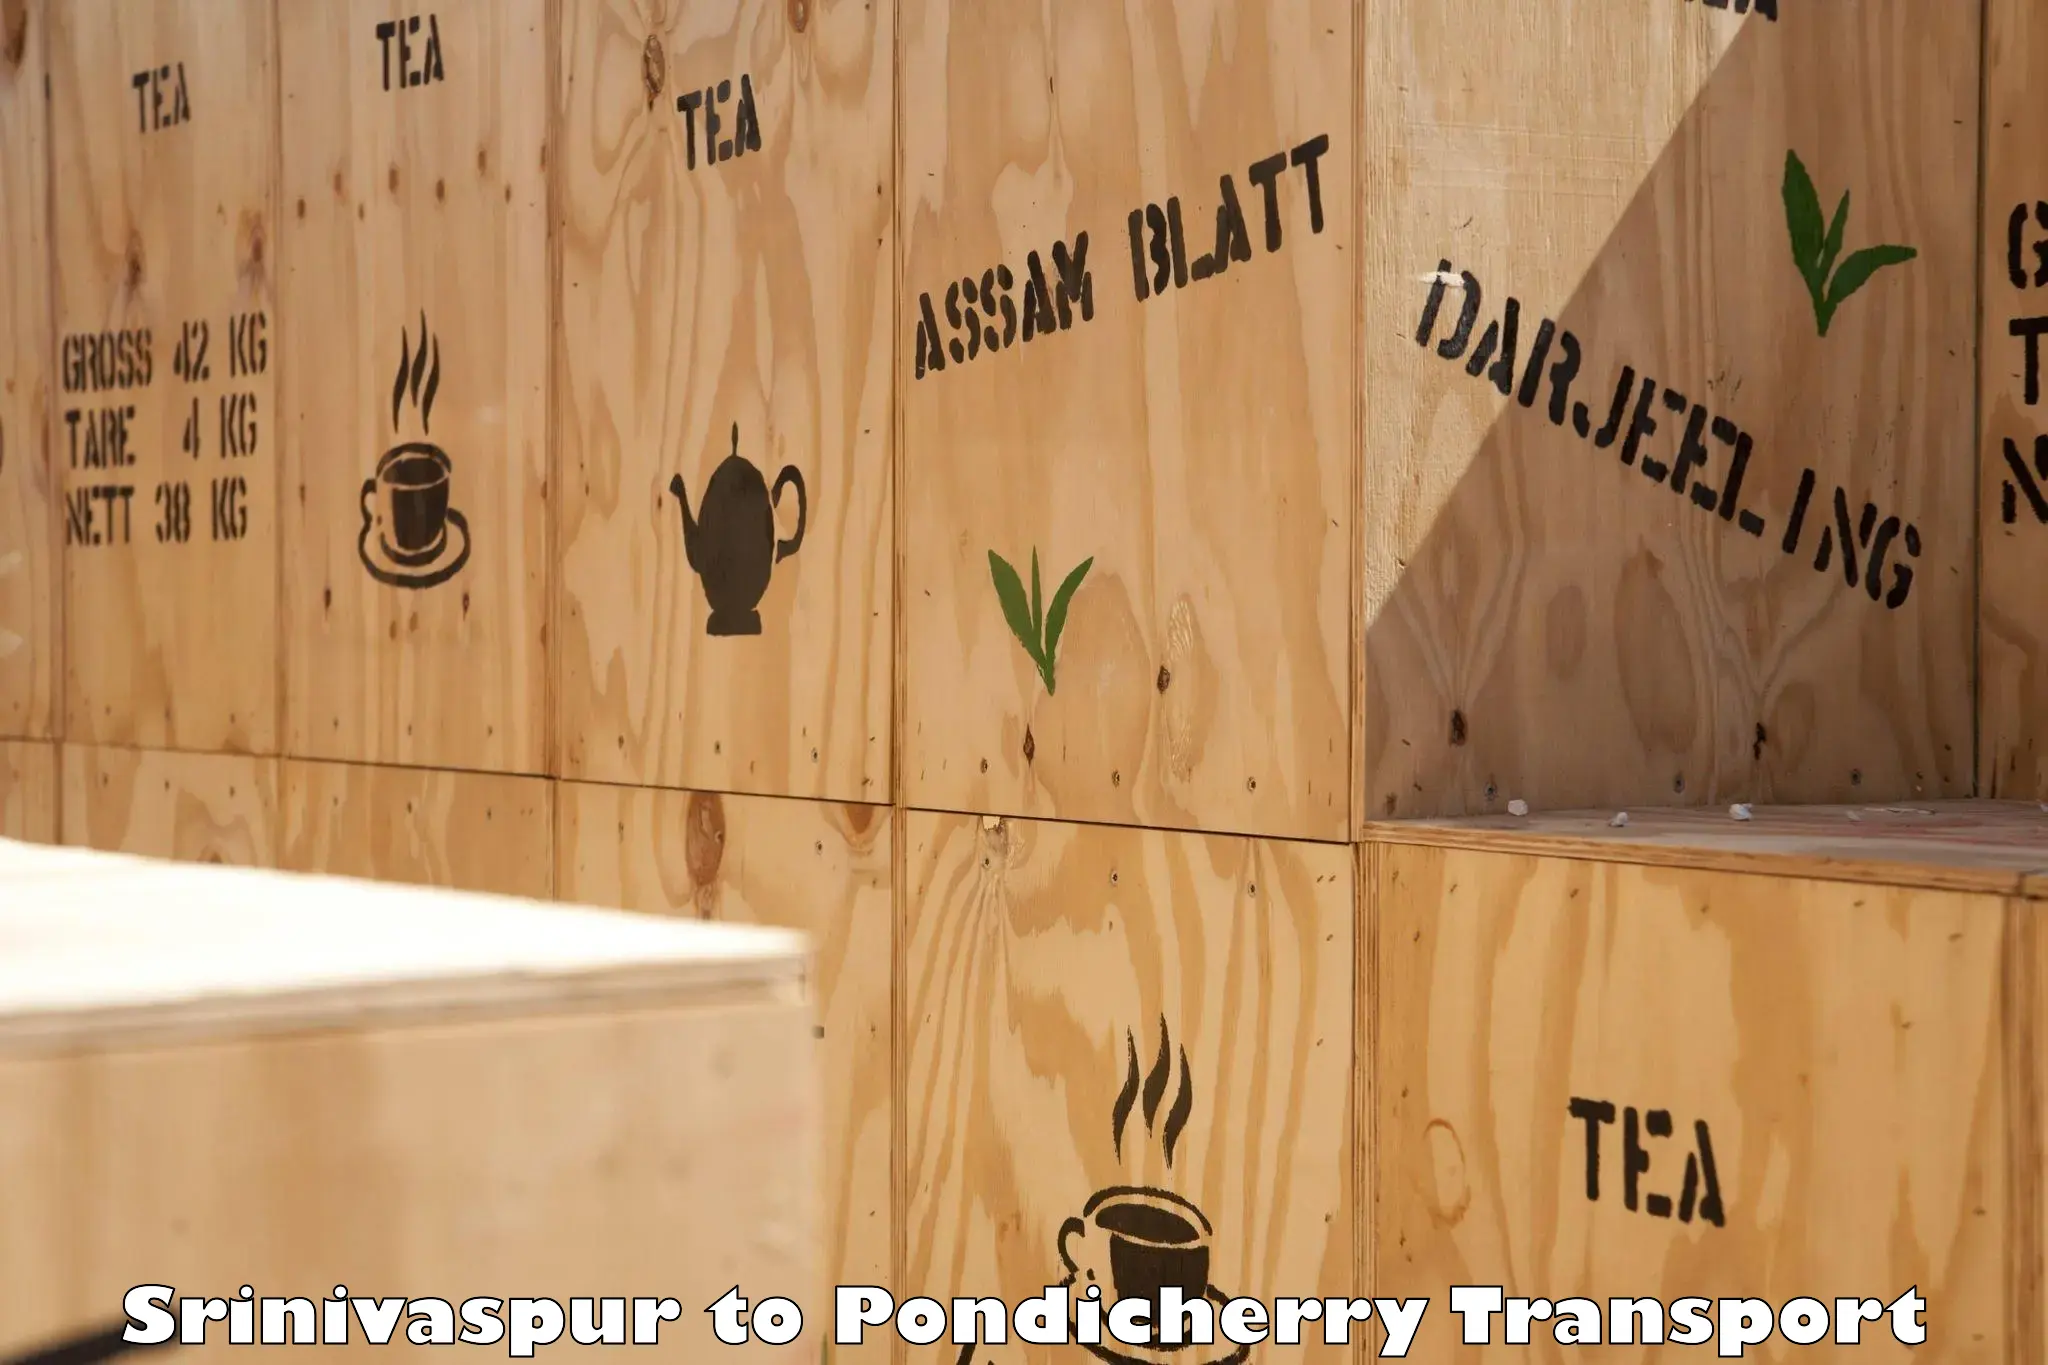 Container transport service Srinivaspur to Pondicherry